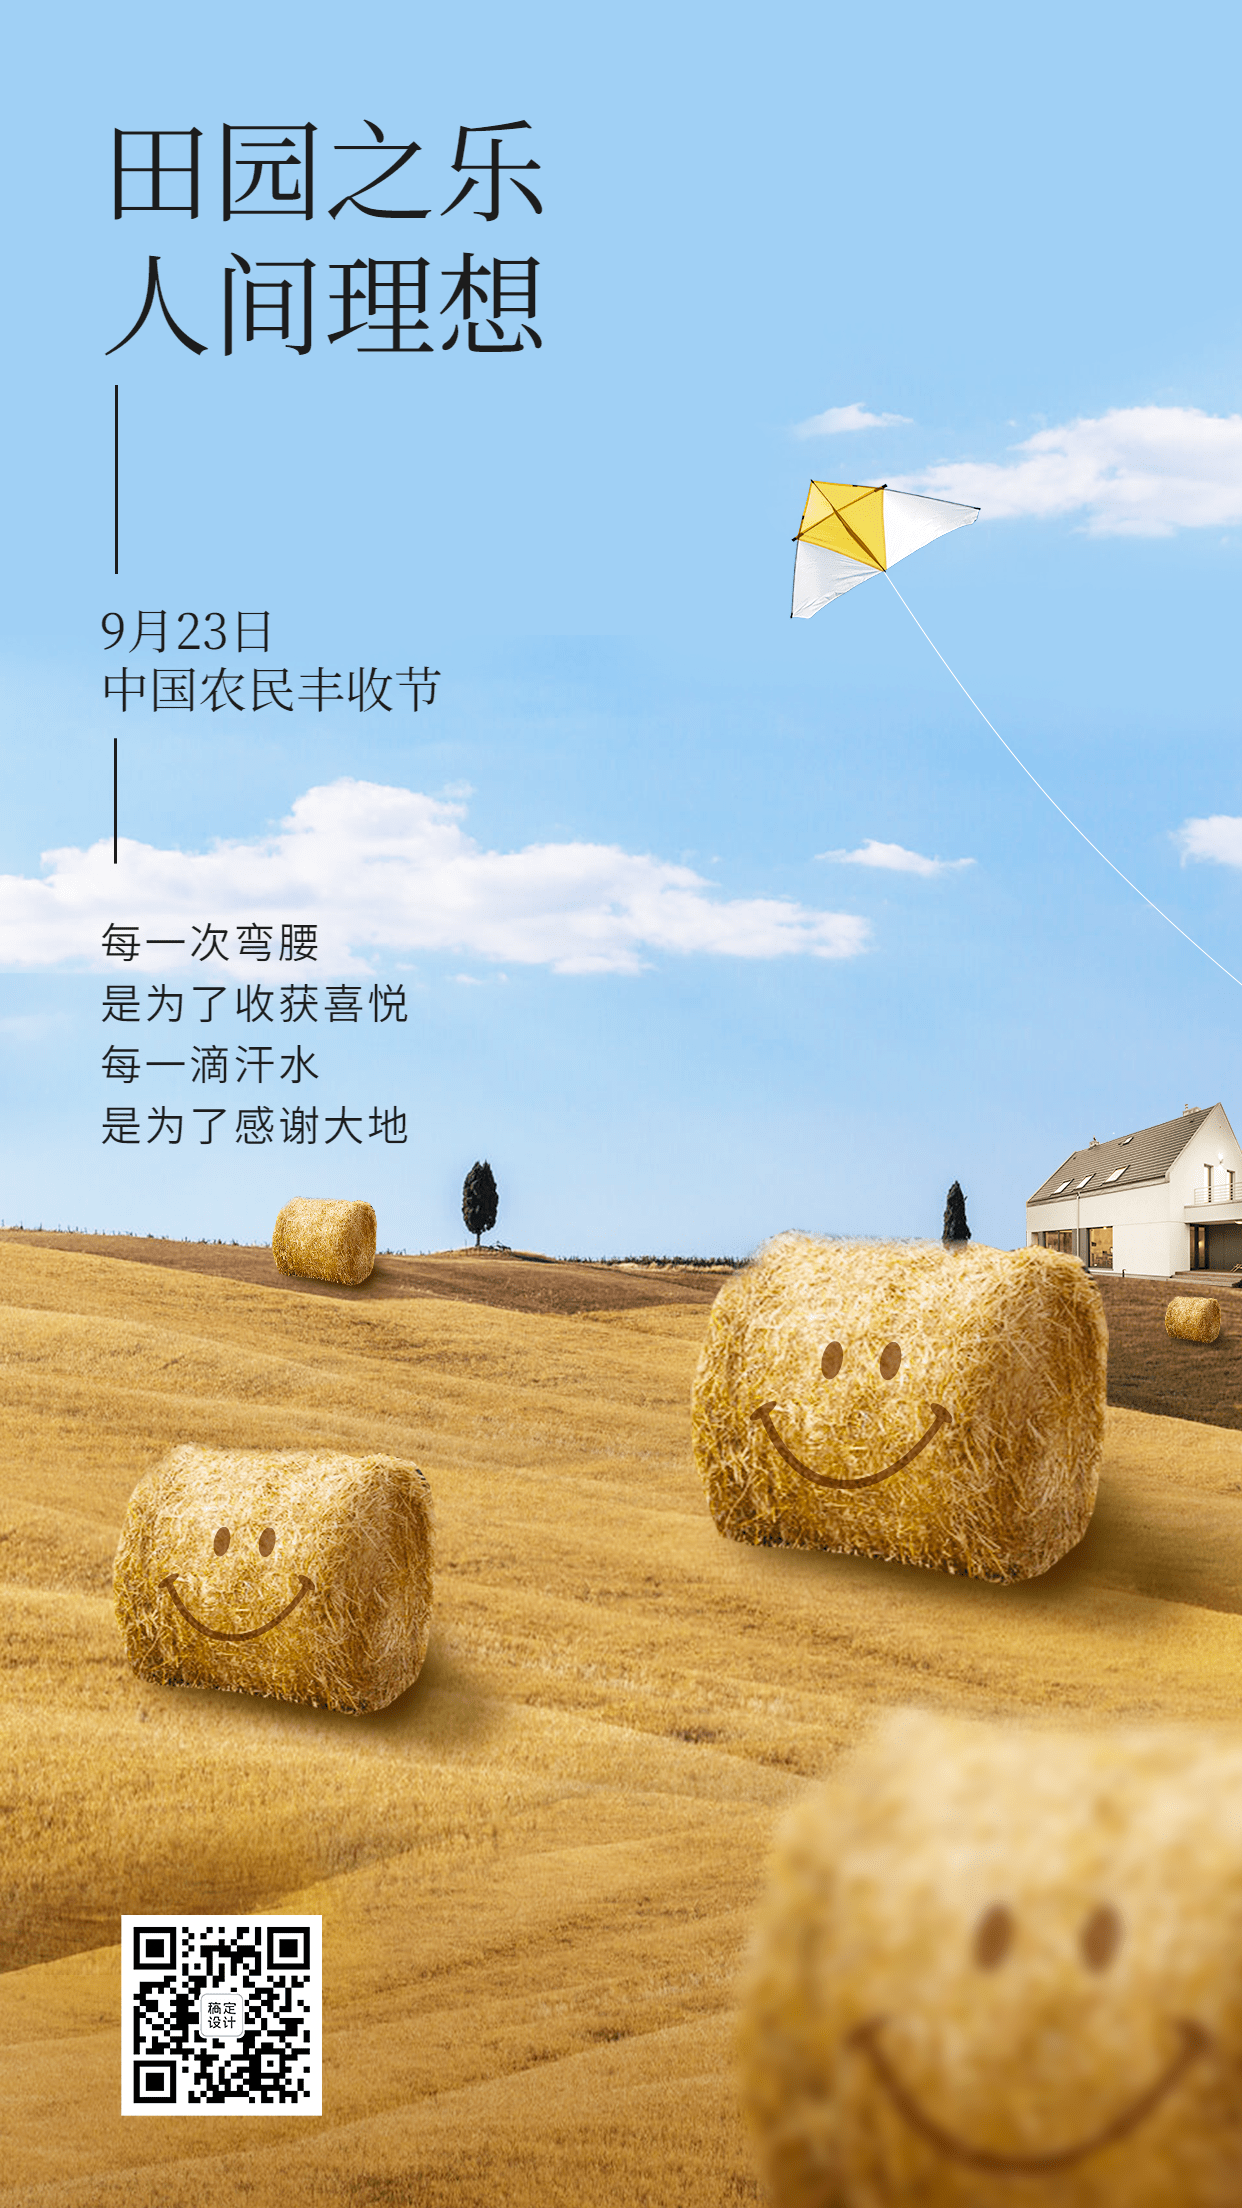 中国农民丰收节节日宣传创意合成手机海报预览效果